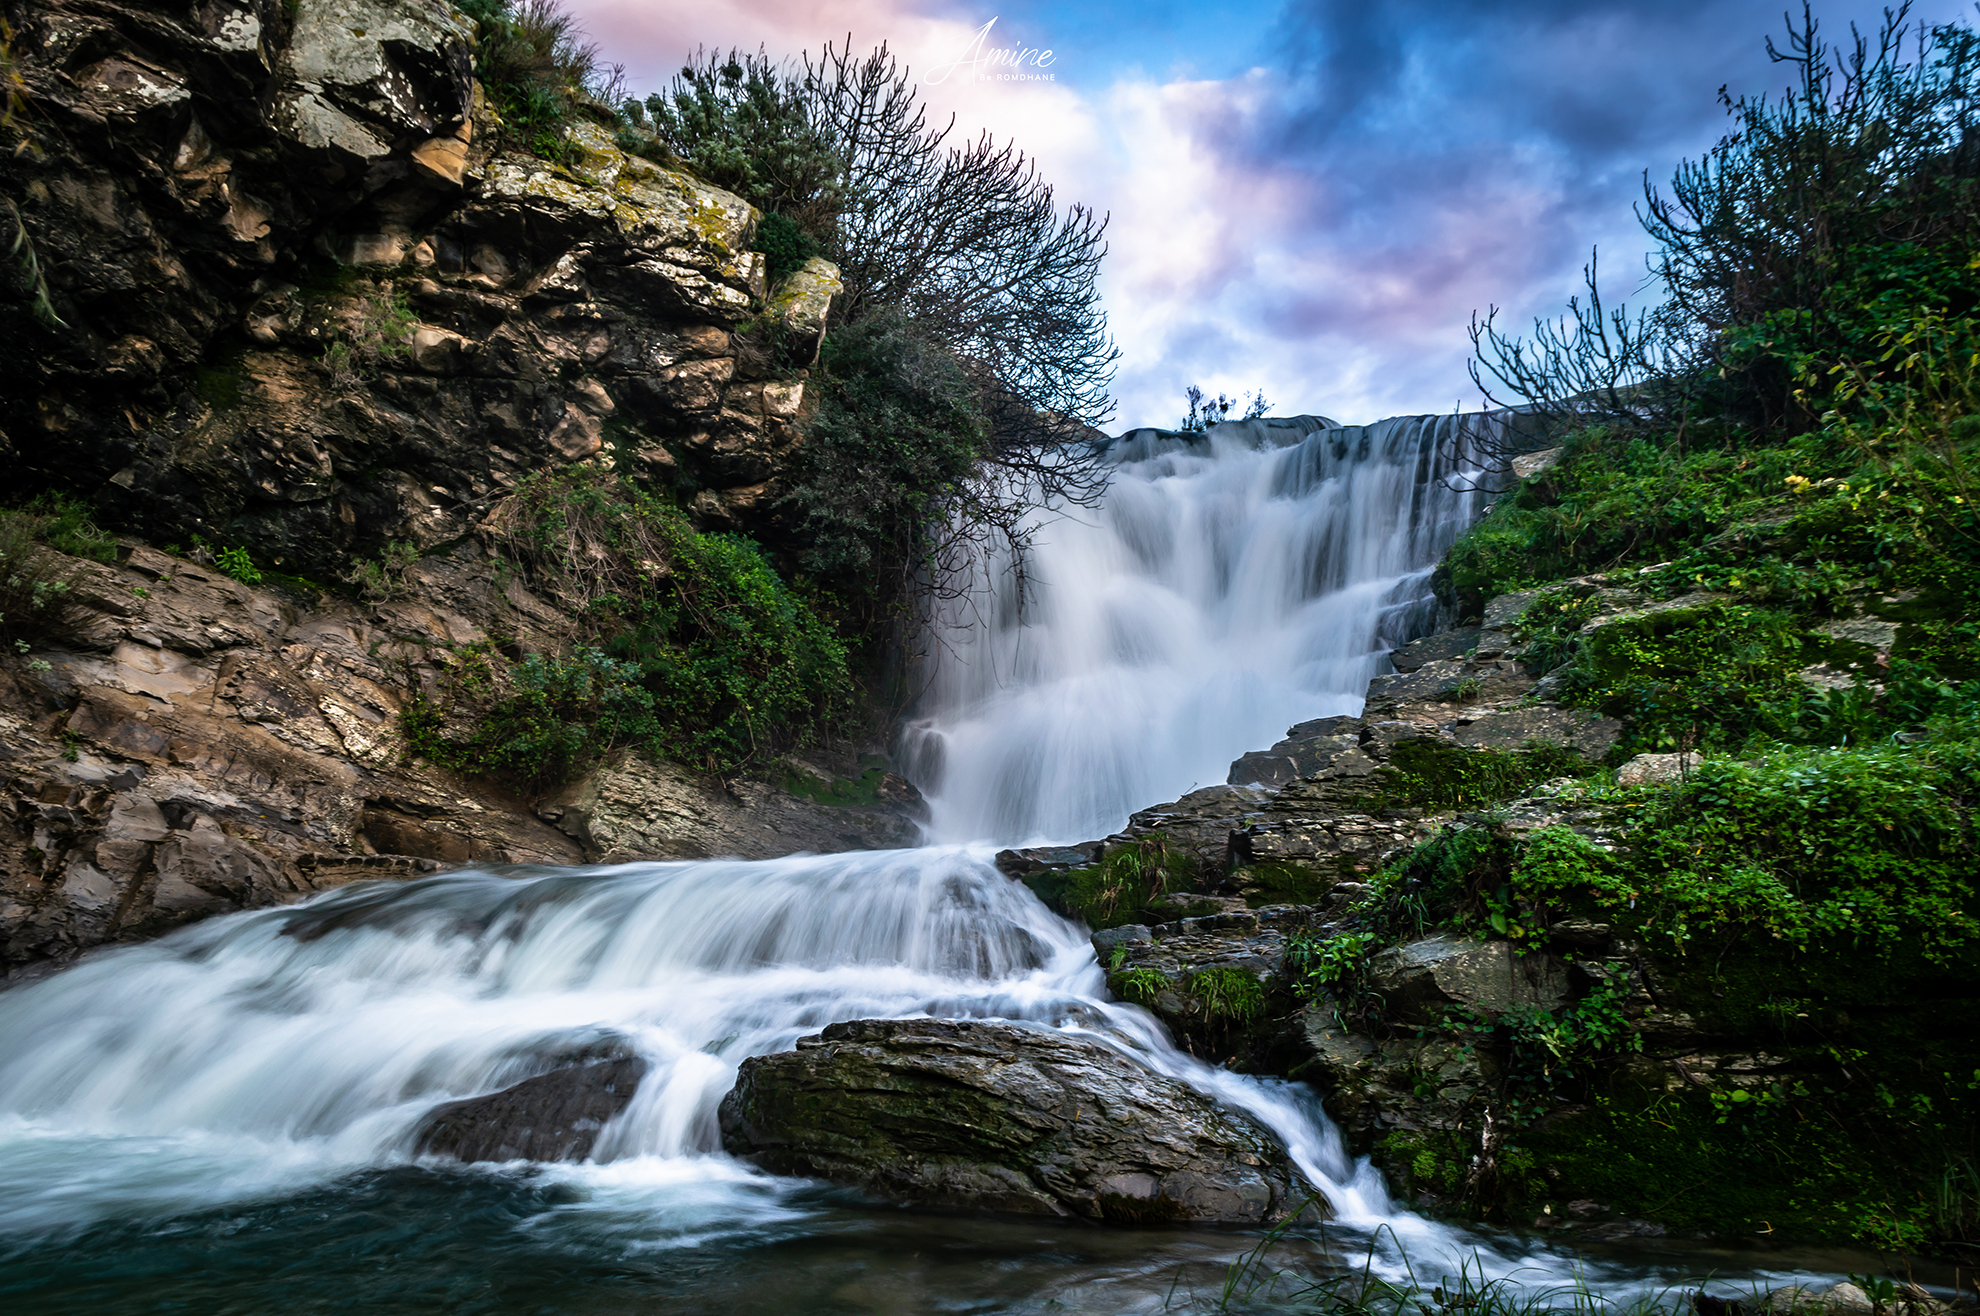 Ras El Oued waterfall by Amine Be Romdhane